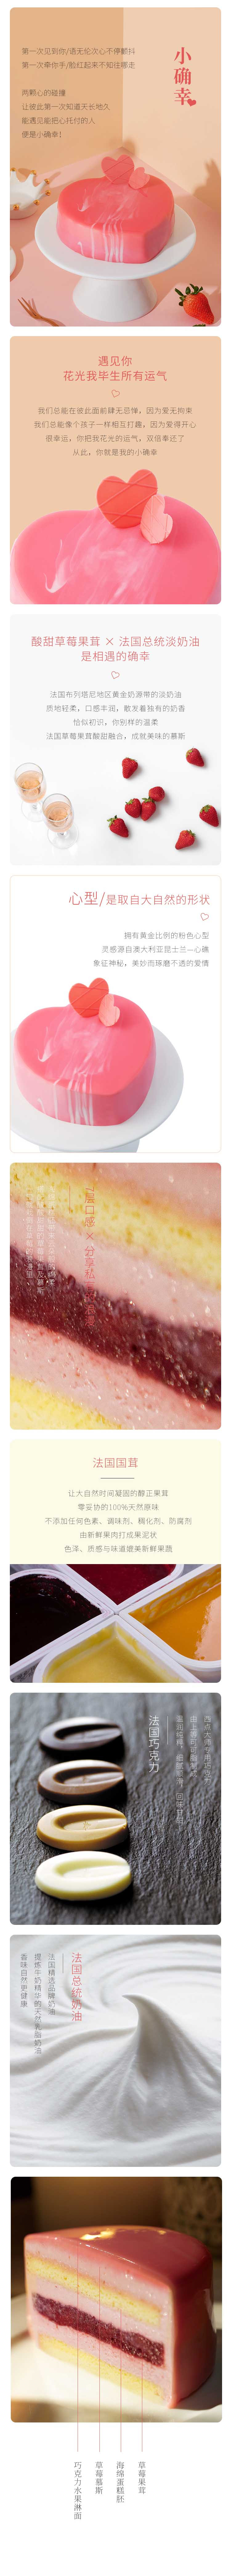 壹点壹客 【深圳馆】小确幸-创意奶油草莓爱心型生日蛋糕